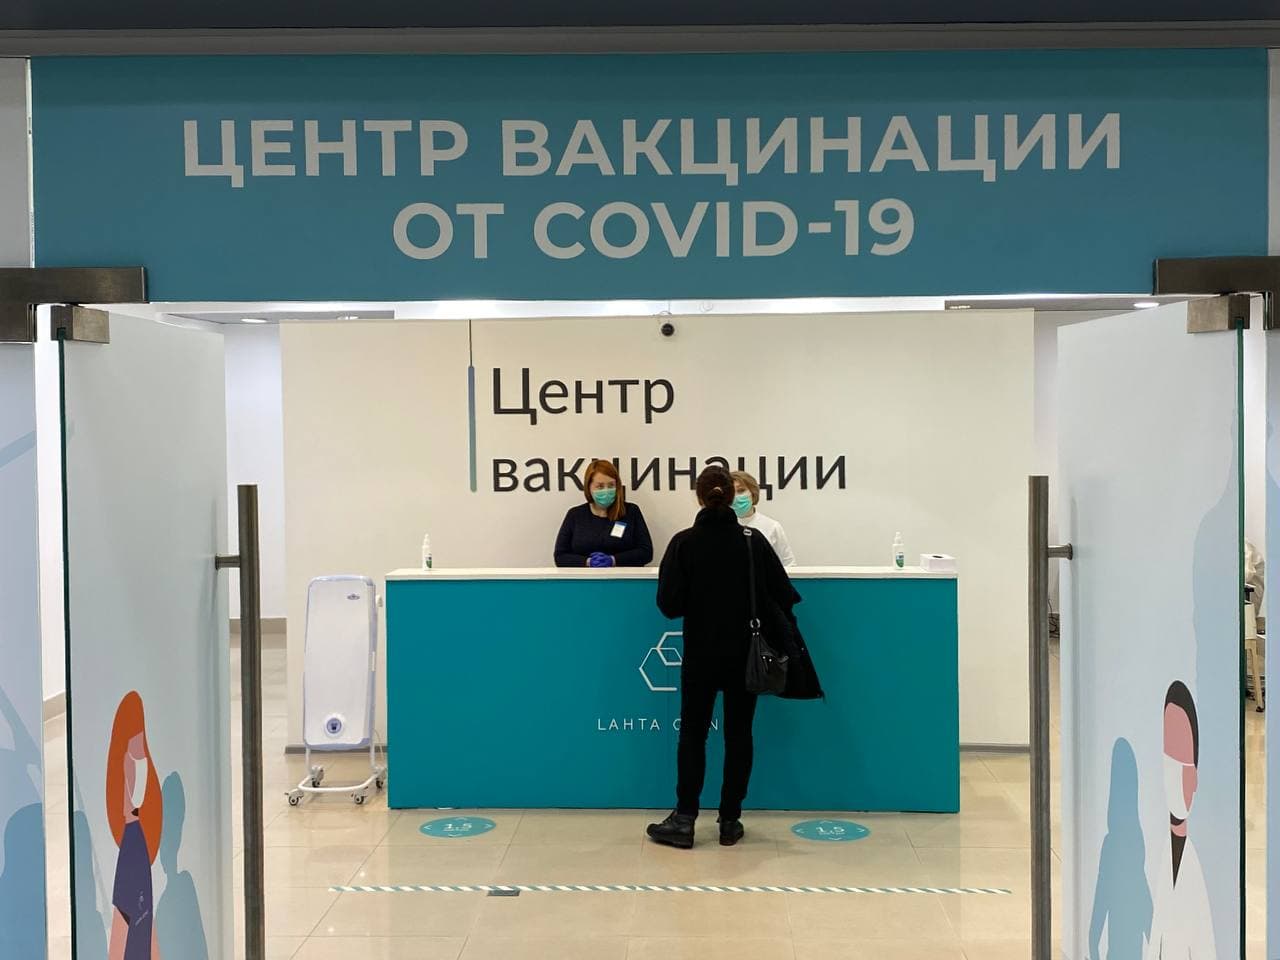 «Народ счастья своего не понимает»: в прививочные кабинеты в ТЦ петербуржцы не спешат, предпочитая вакцинации шопинг